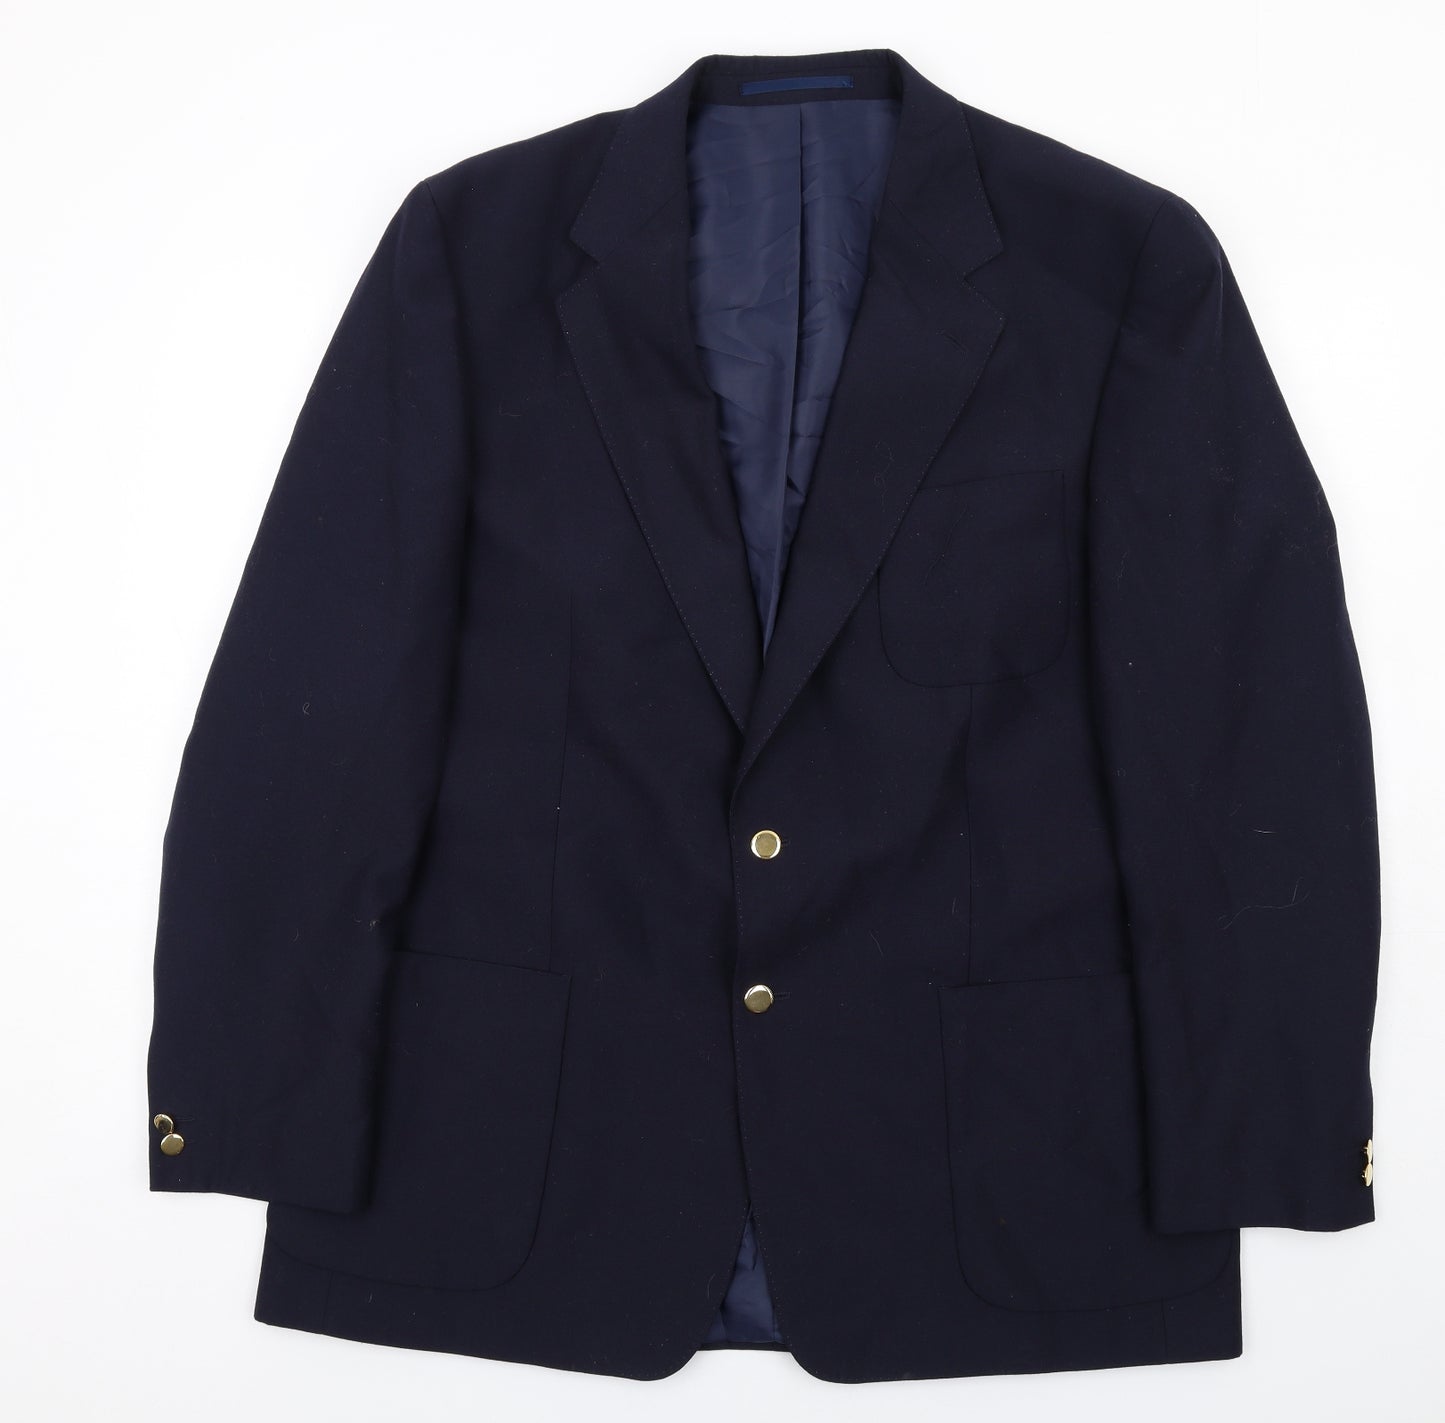 Brook Taverner Mens Blue Polyester Jacket Suit Jacket Size 44 Regular